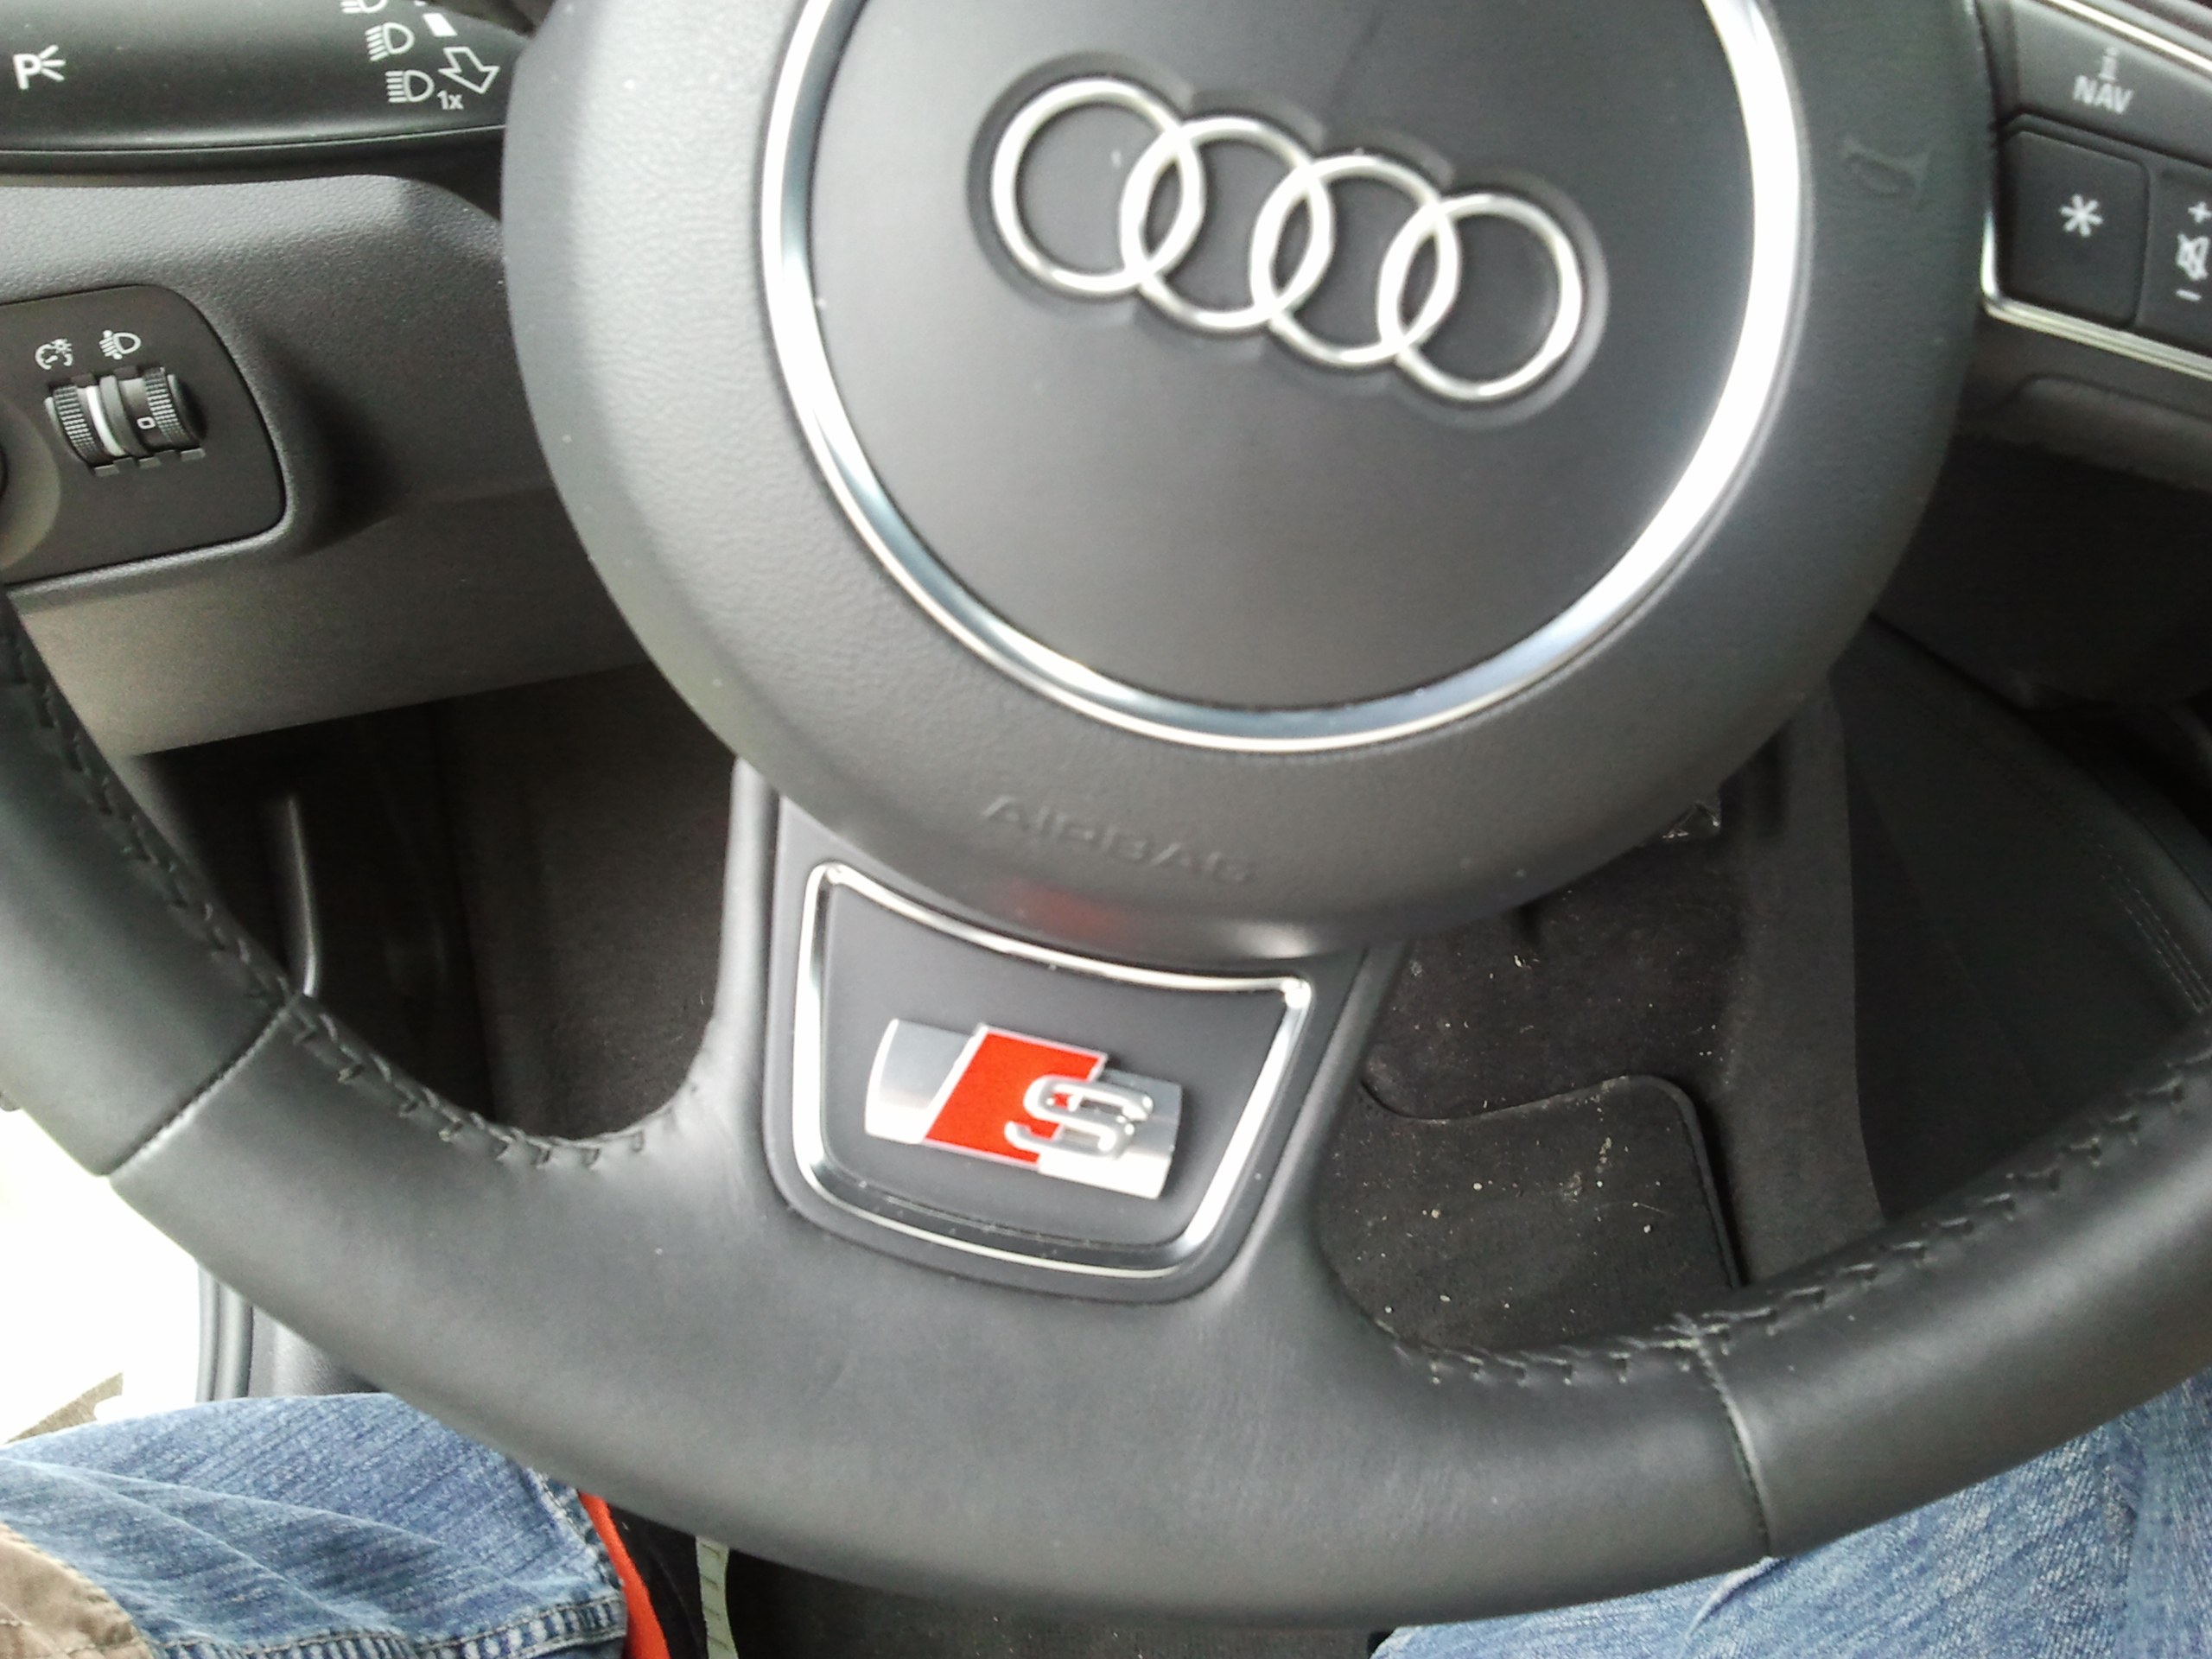 S-Line Emblem anbringen - Startseite Forum Auto Audi